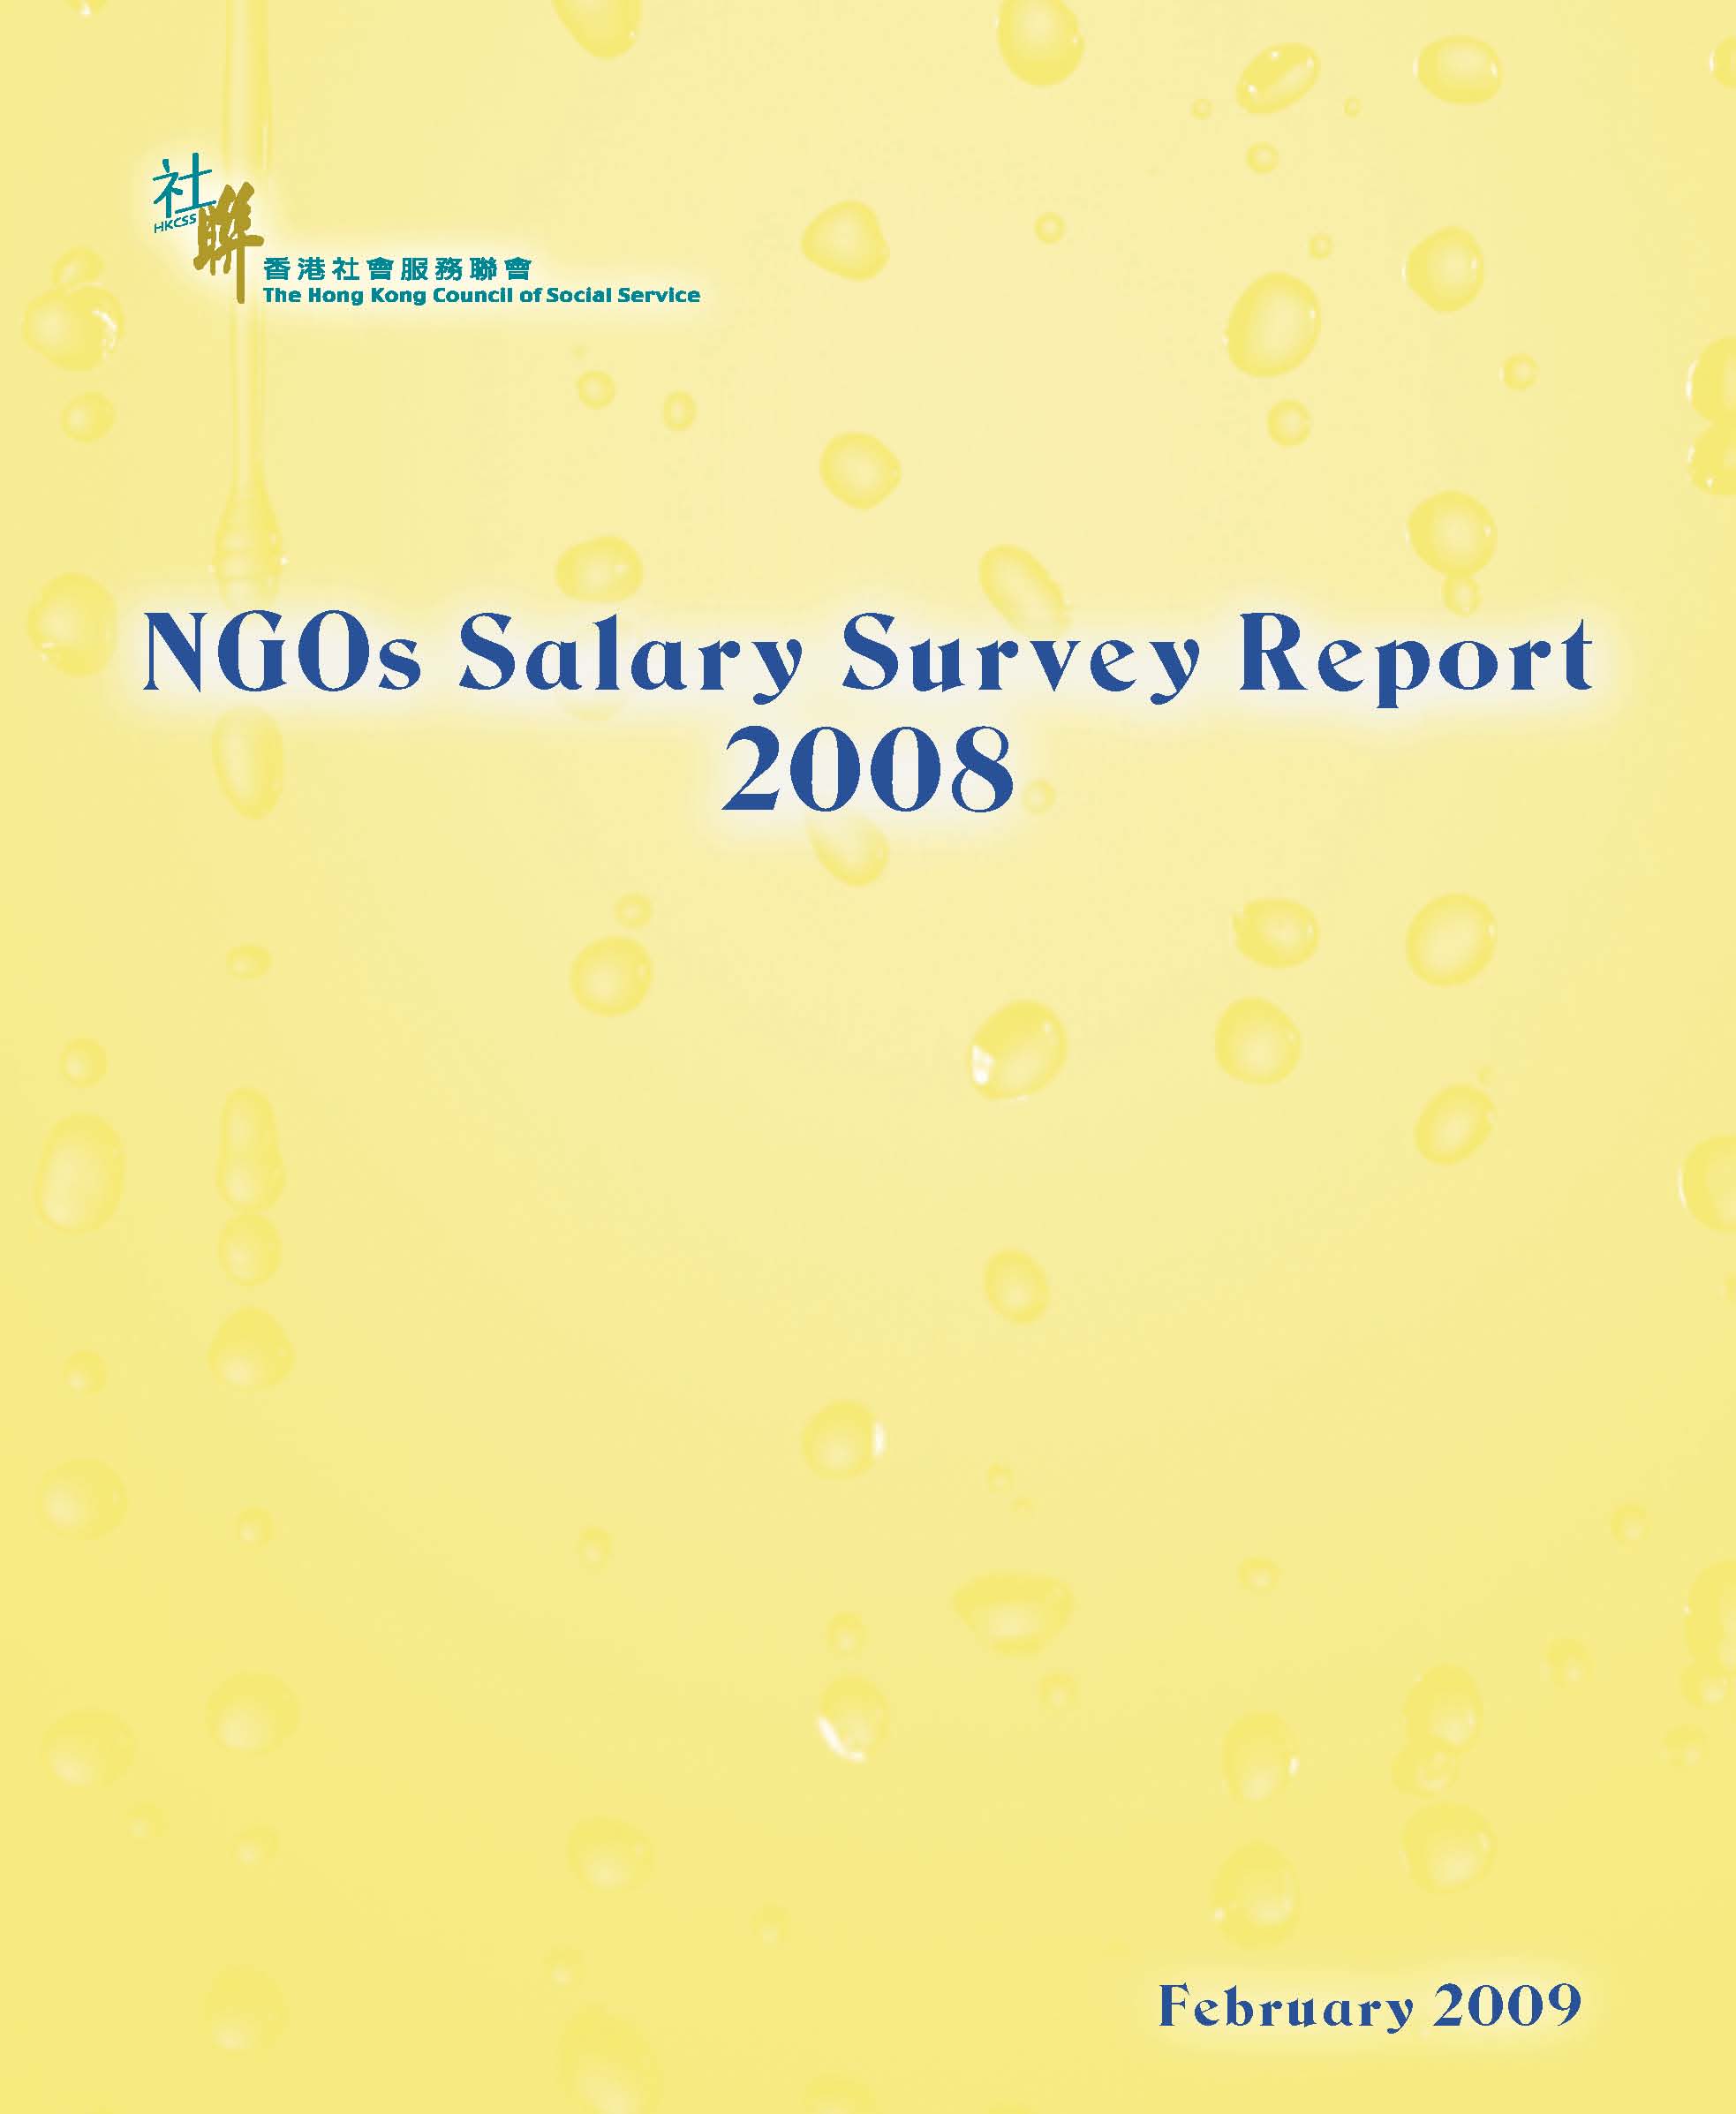 非政府機構薪酬調查 2008 (只提供英文版本)